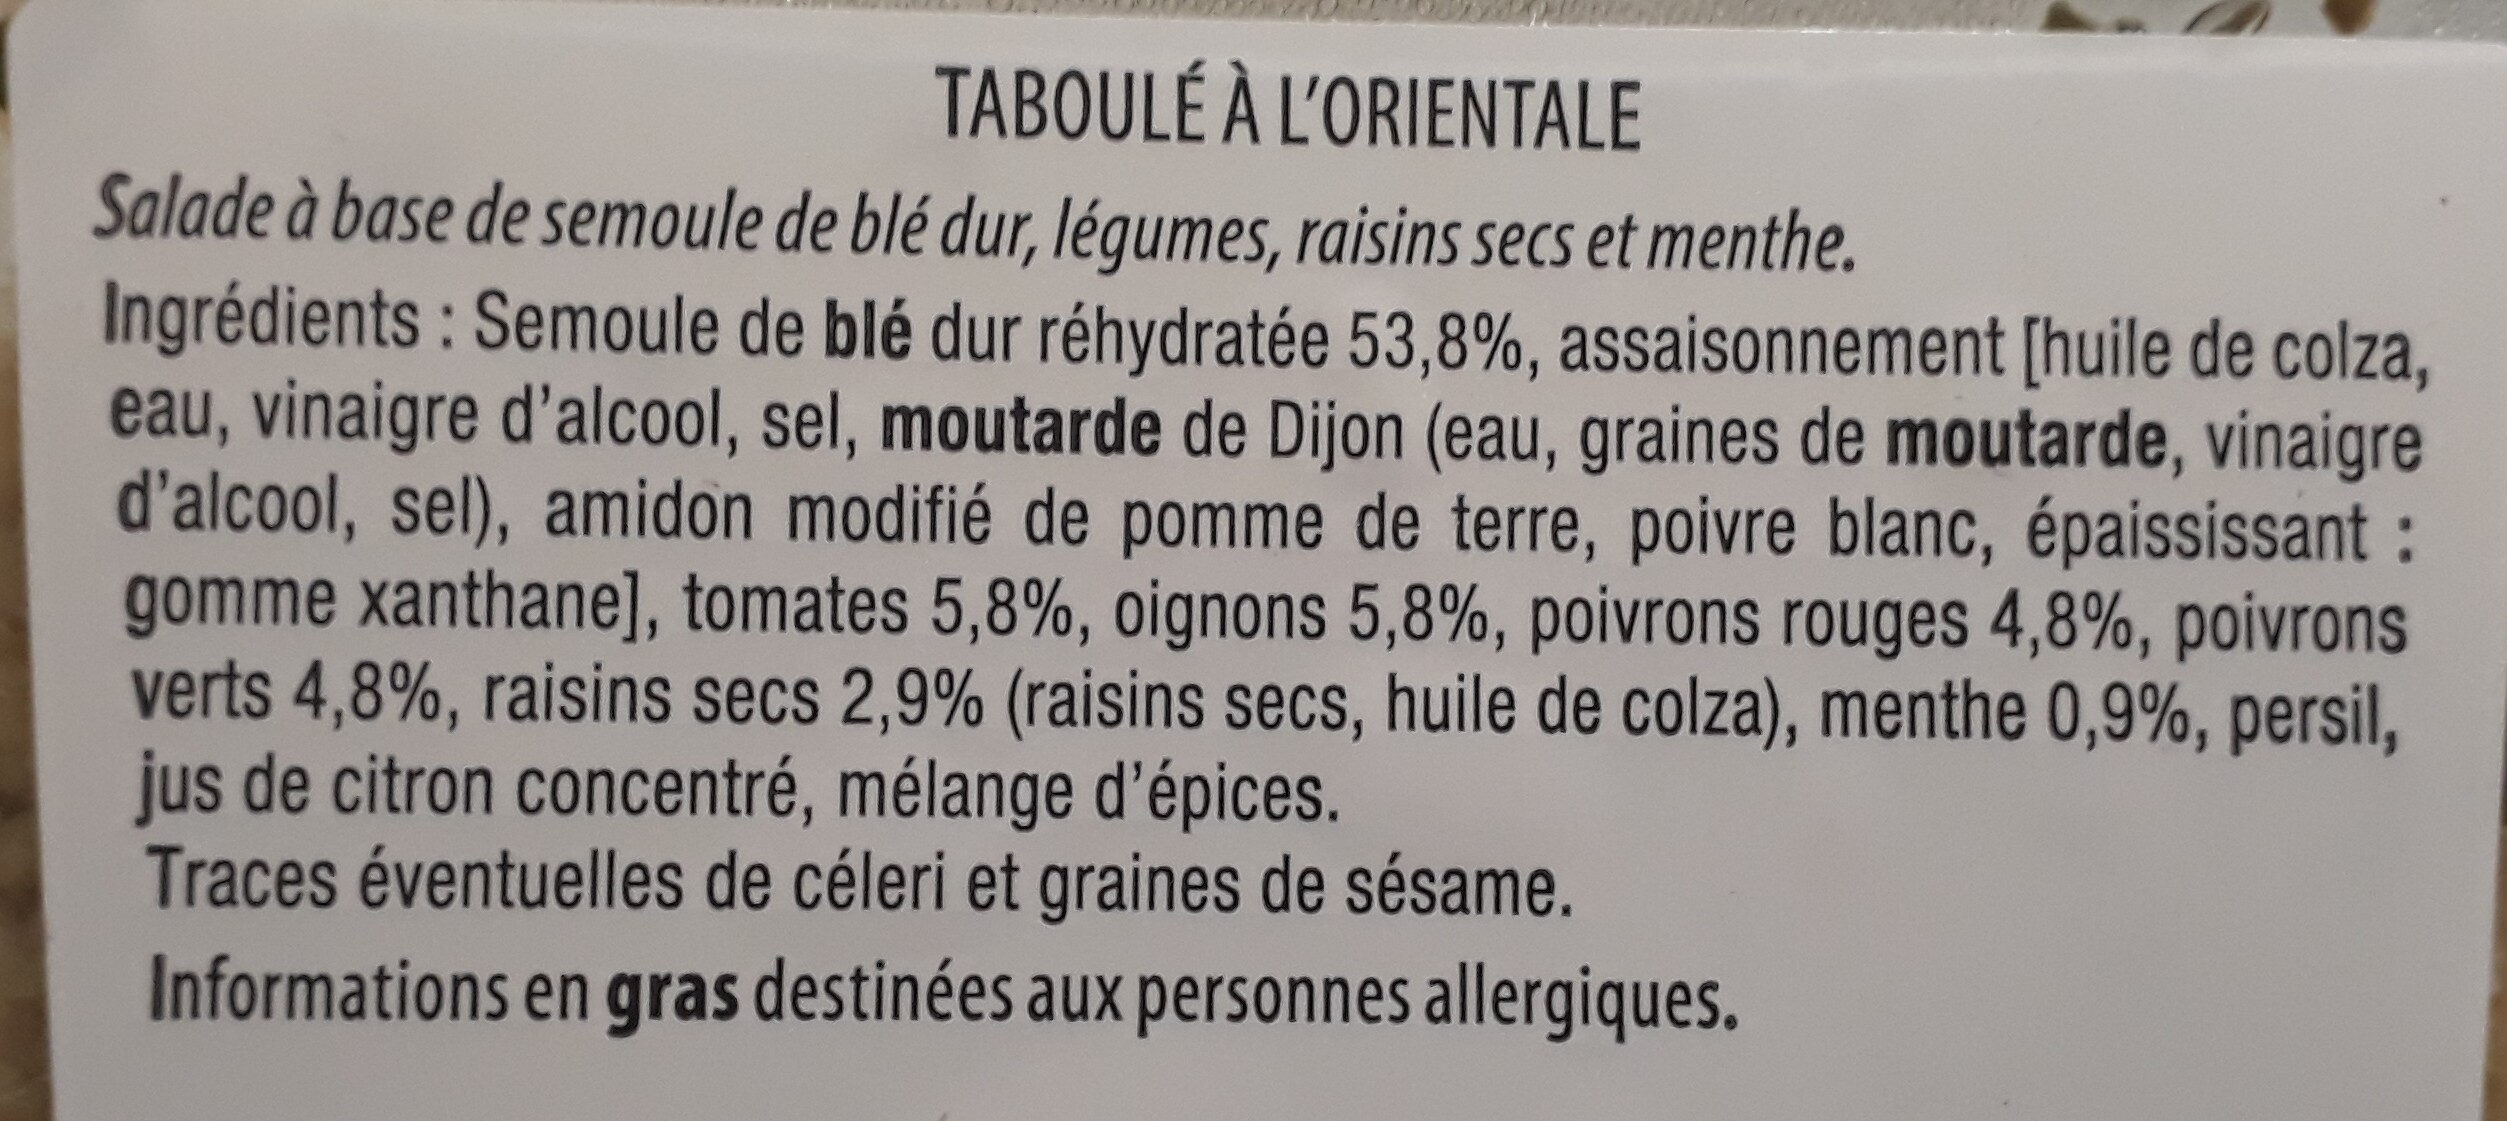 Taboulé a l' orientale - Ingrédients